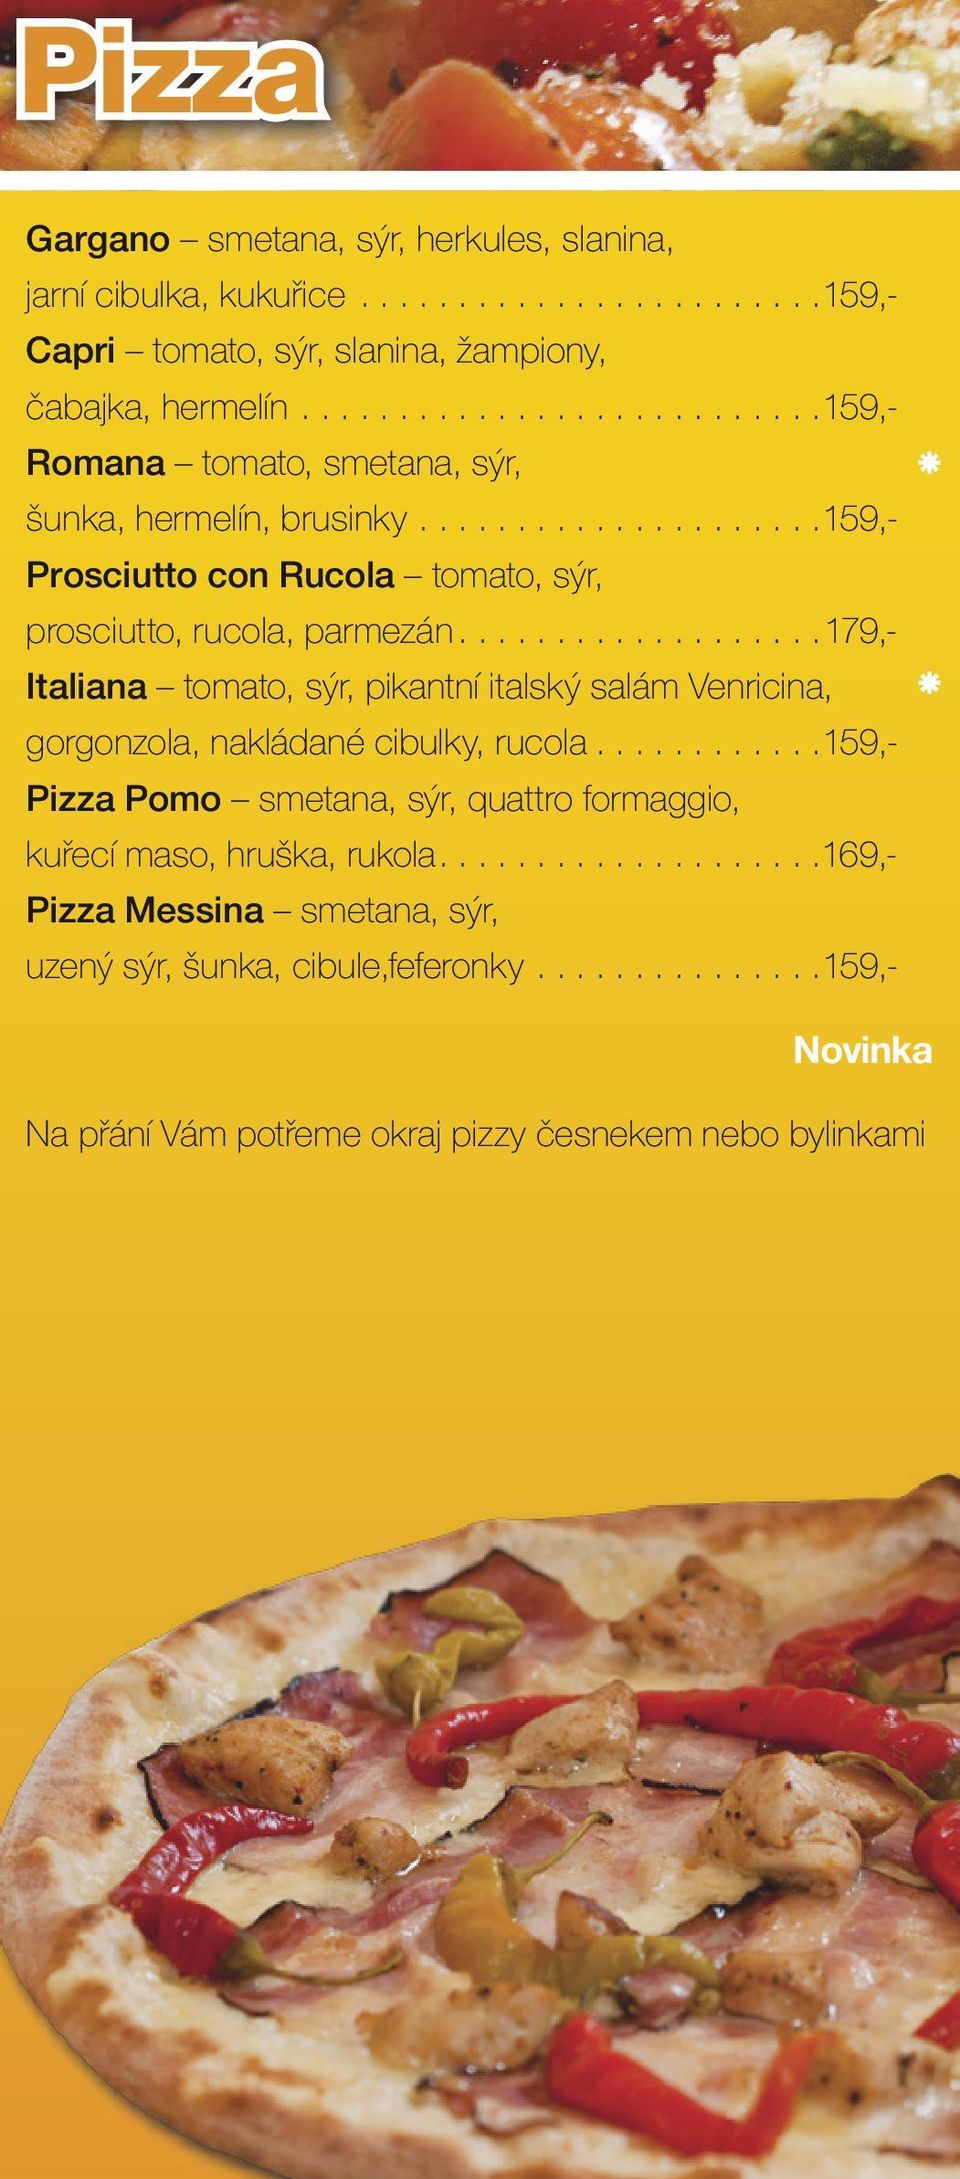 ..179,- Italiana tomato, sýr, pikantní italský salám Venricina, gorgonzola, nakládané cibulky, rucola.